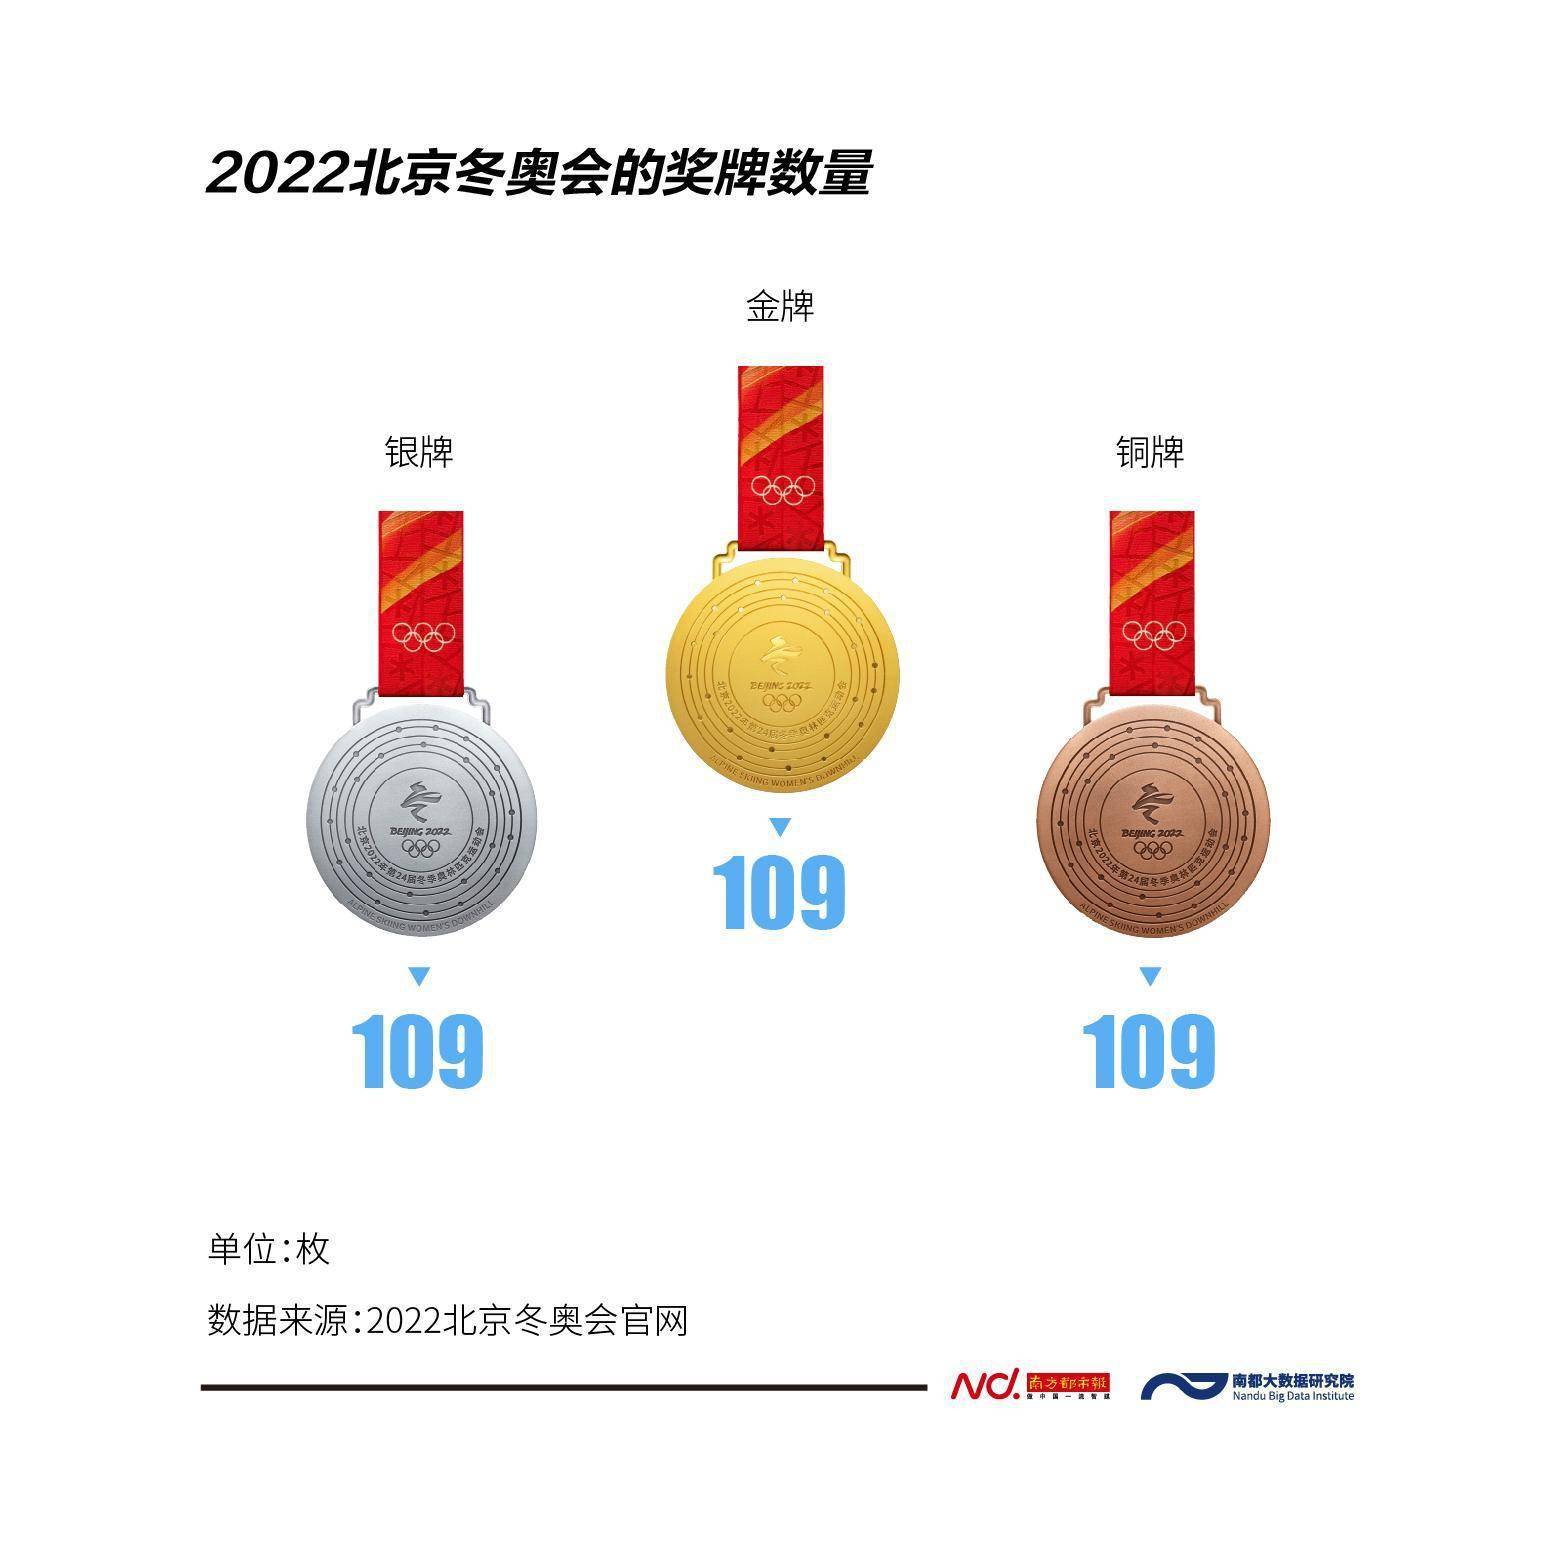 2022年冬奥会奖牌统计图片